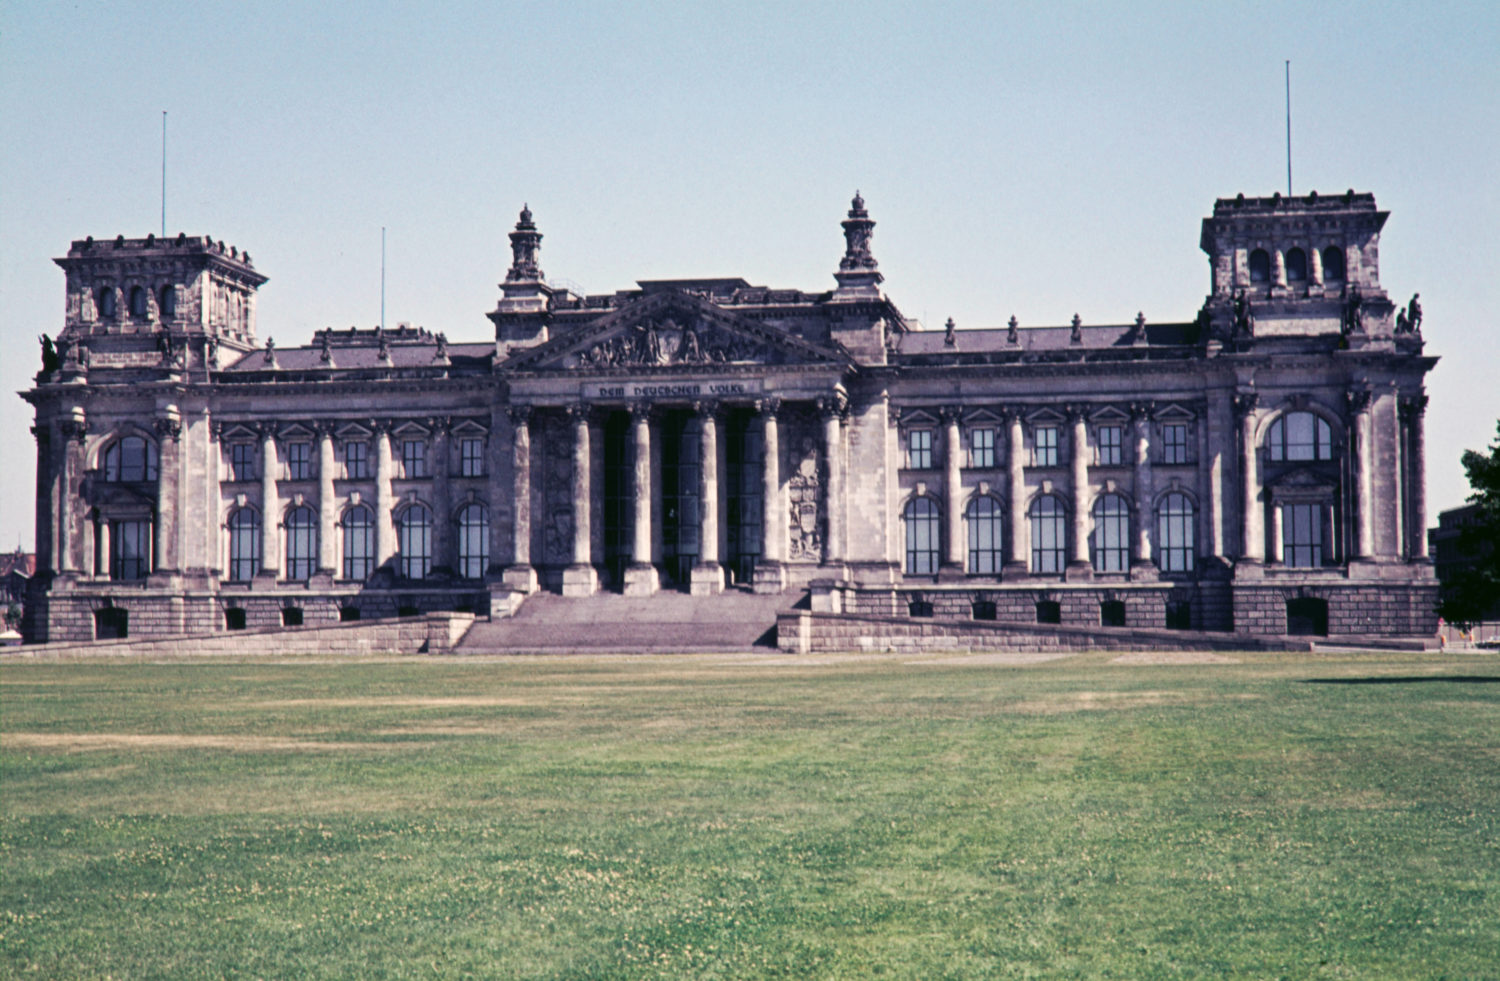 Nach dem Krieg wurde der Reichstag wieder aufgebaut – allerdings ohne Kuppel.